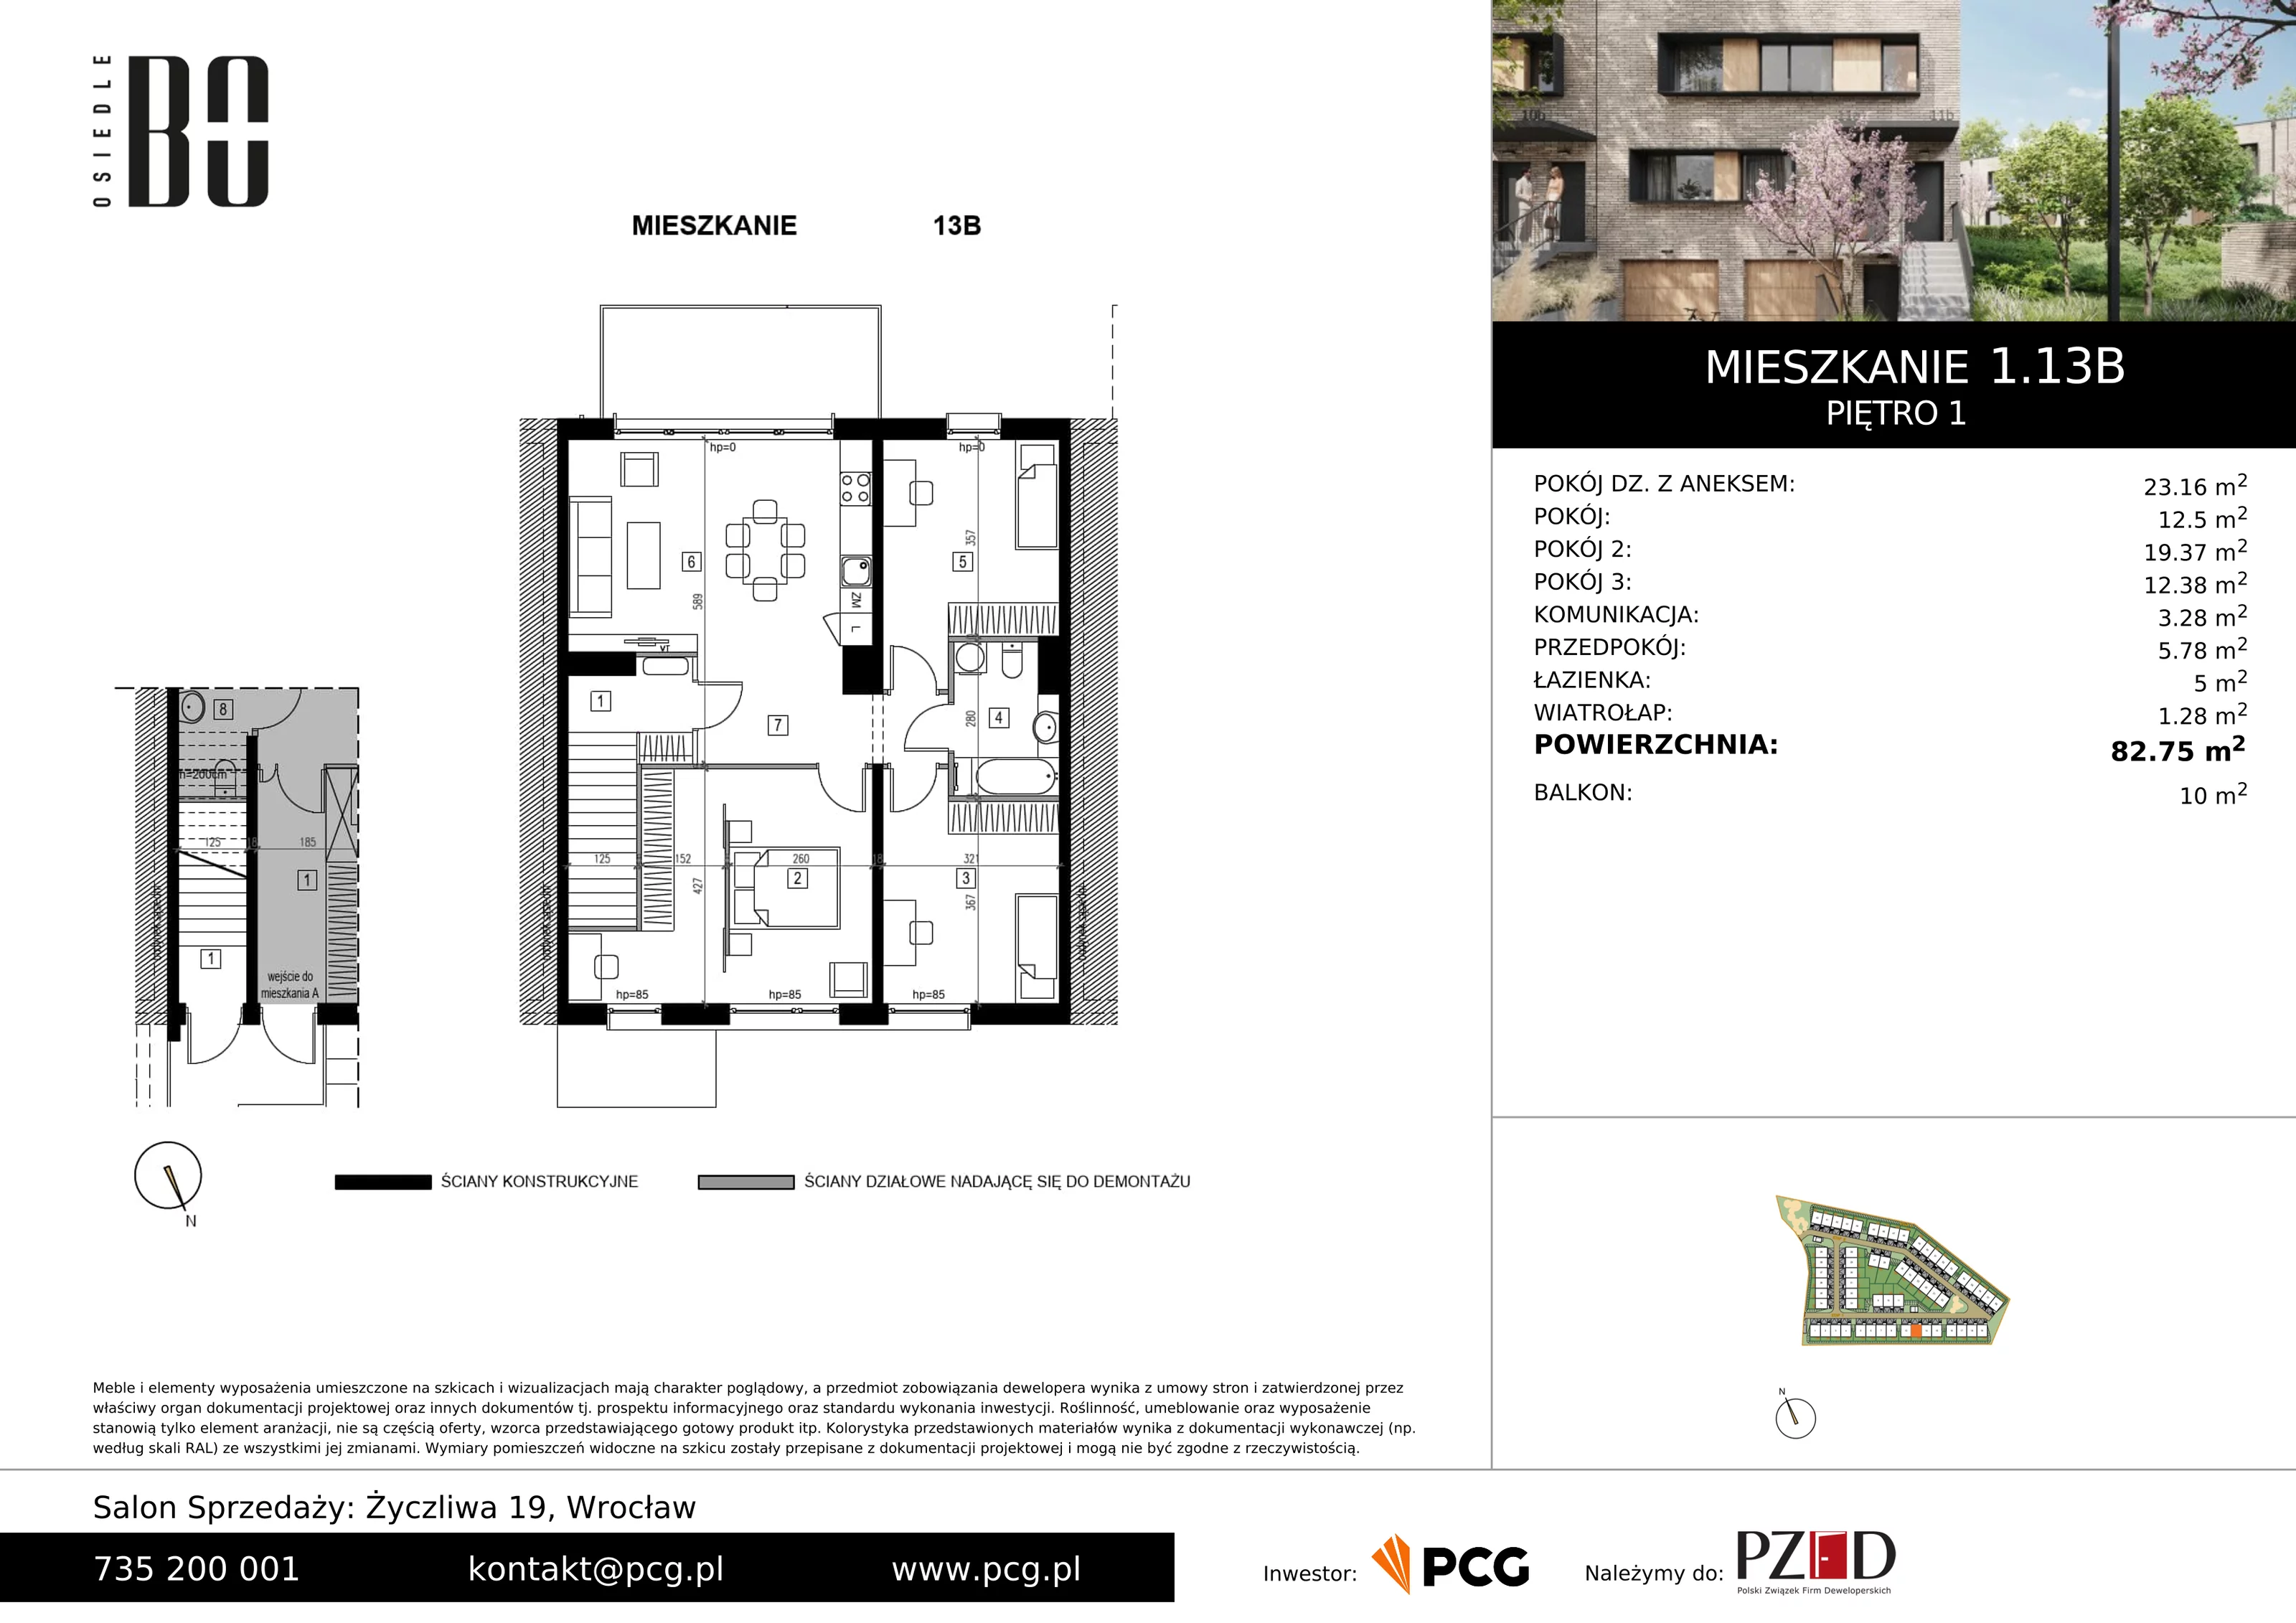 Apartament 82,75 m², piętro 1, oferta nr 1.13B, Osiedle BO, Wrocław, Kowale, ul. Bociana